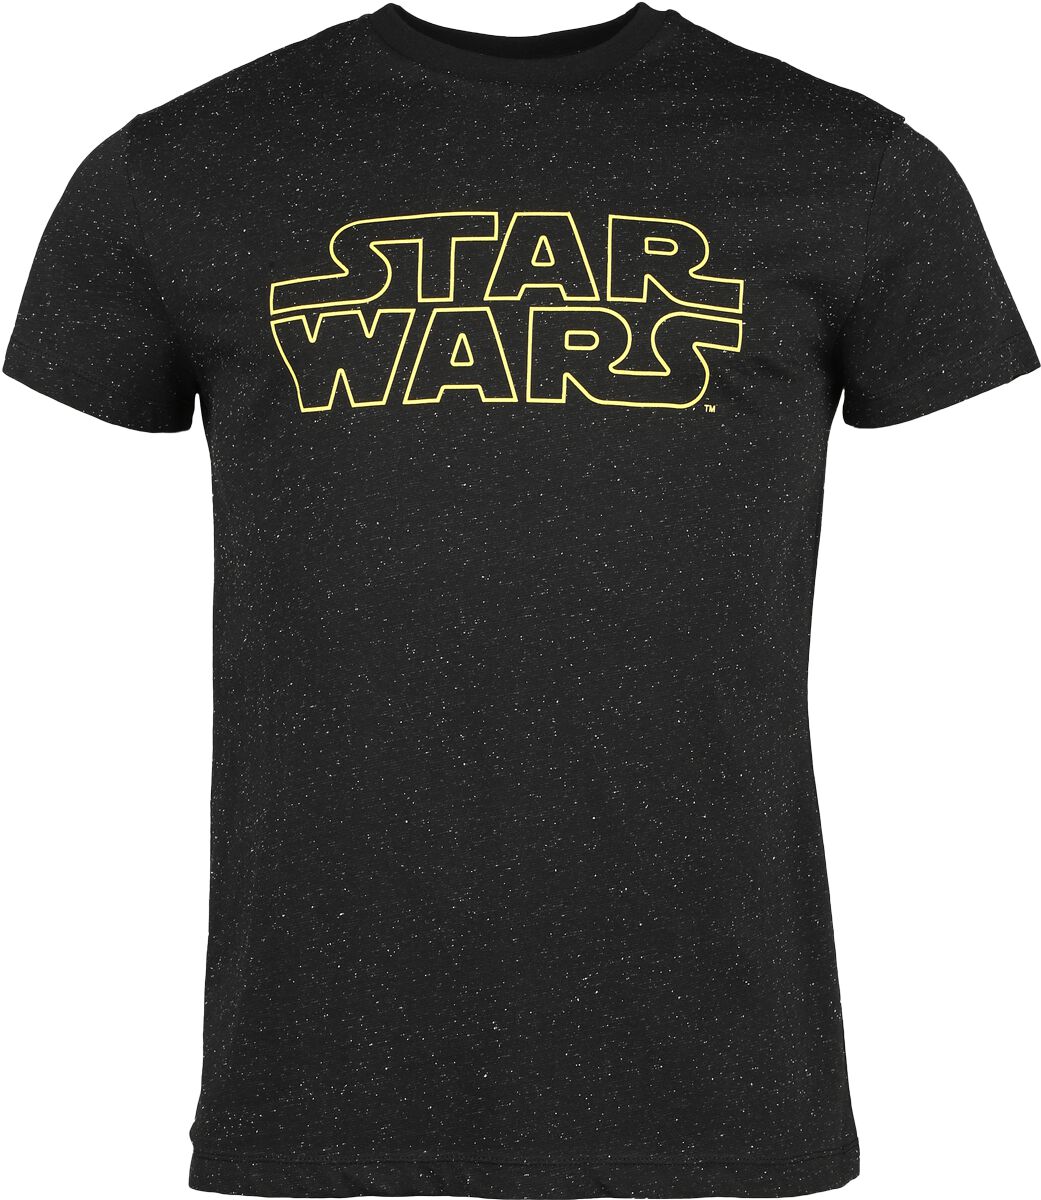 Star Wars T-Shirt - Star Wars - Galaxy - S bis 3XL - für Männer - Größe M - schwarz  - EMP exklusives Merchandise!